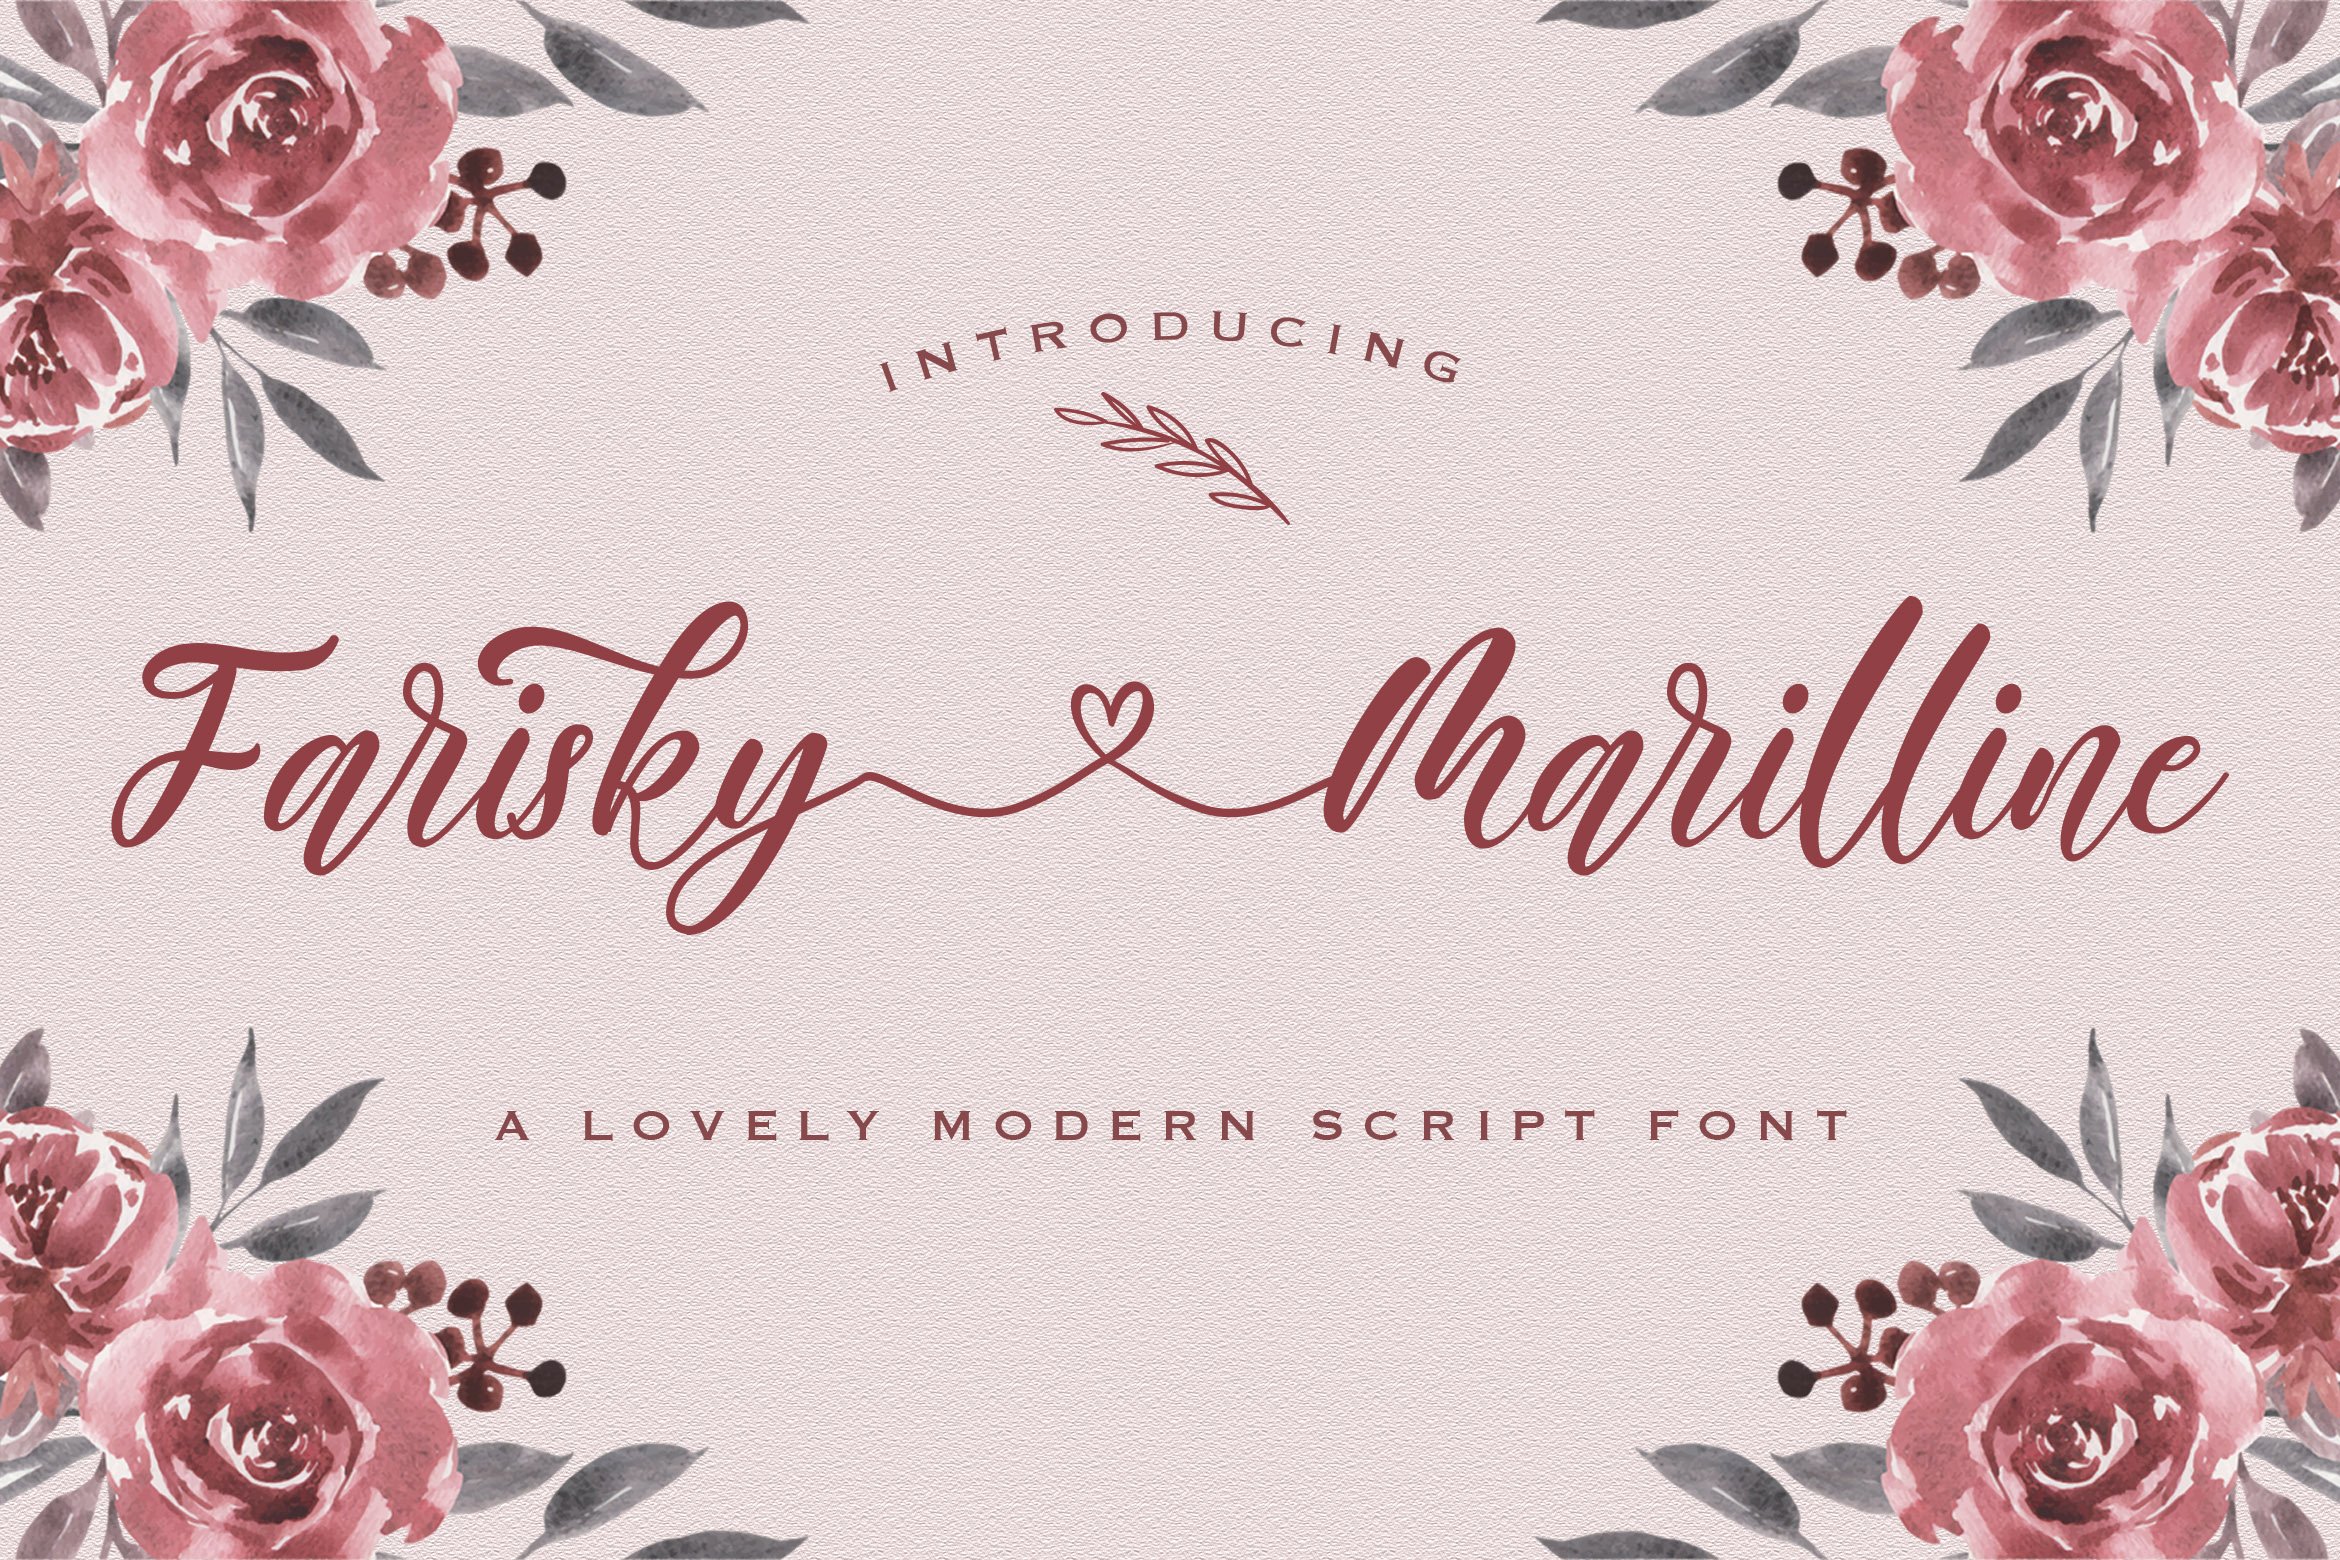 Farisky Marlline - Lovely Calligraph cover image.